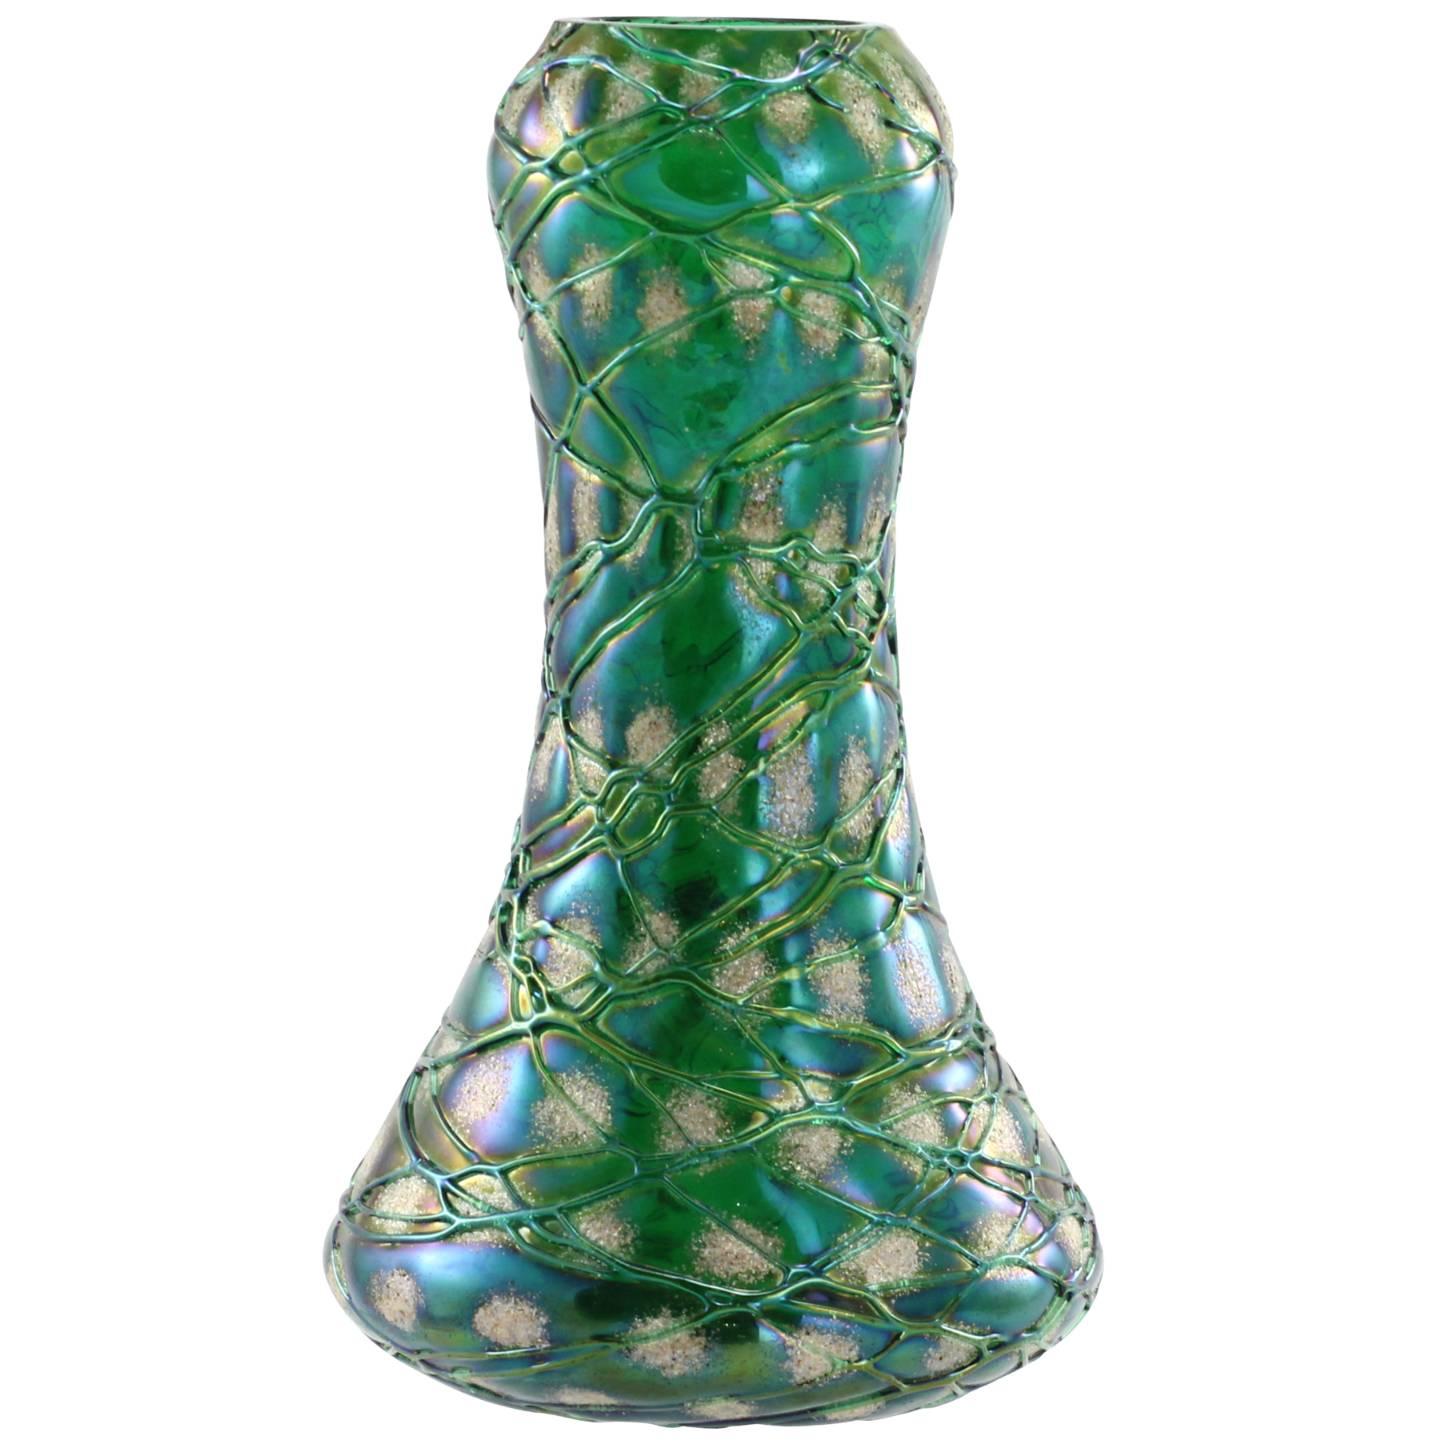 Art Nouveau Bohemian 'Snowflake' Glass Vase by Kralik